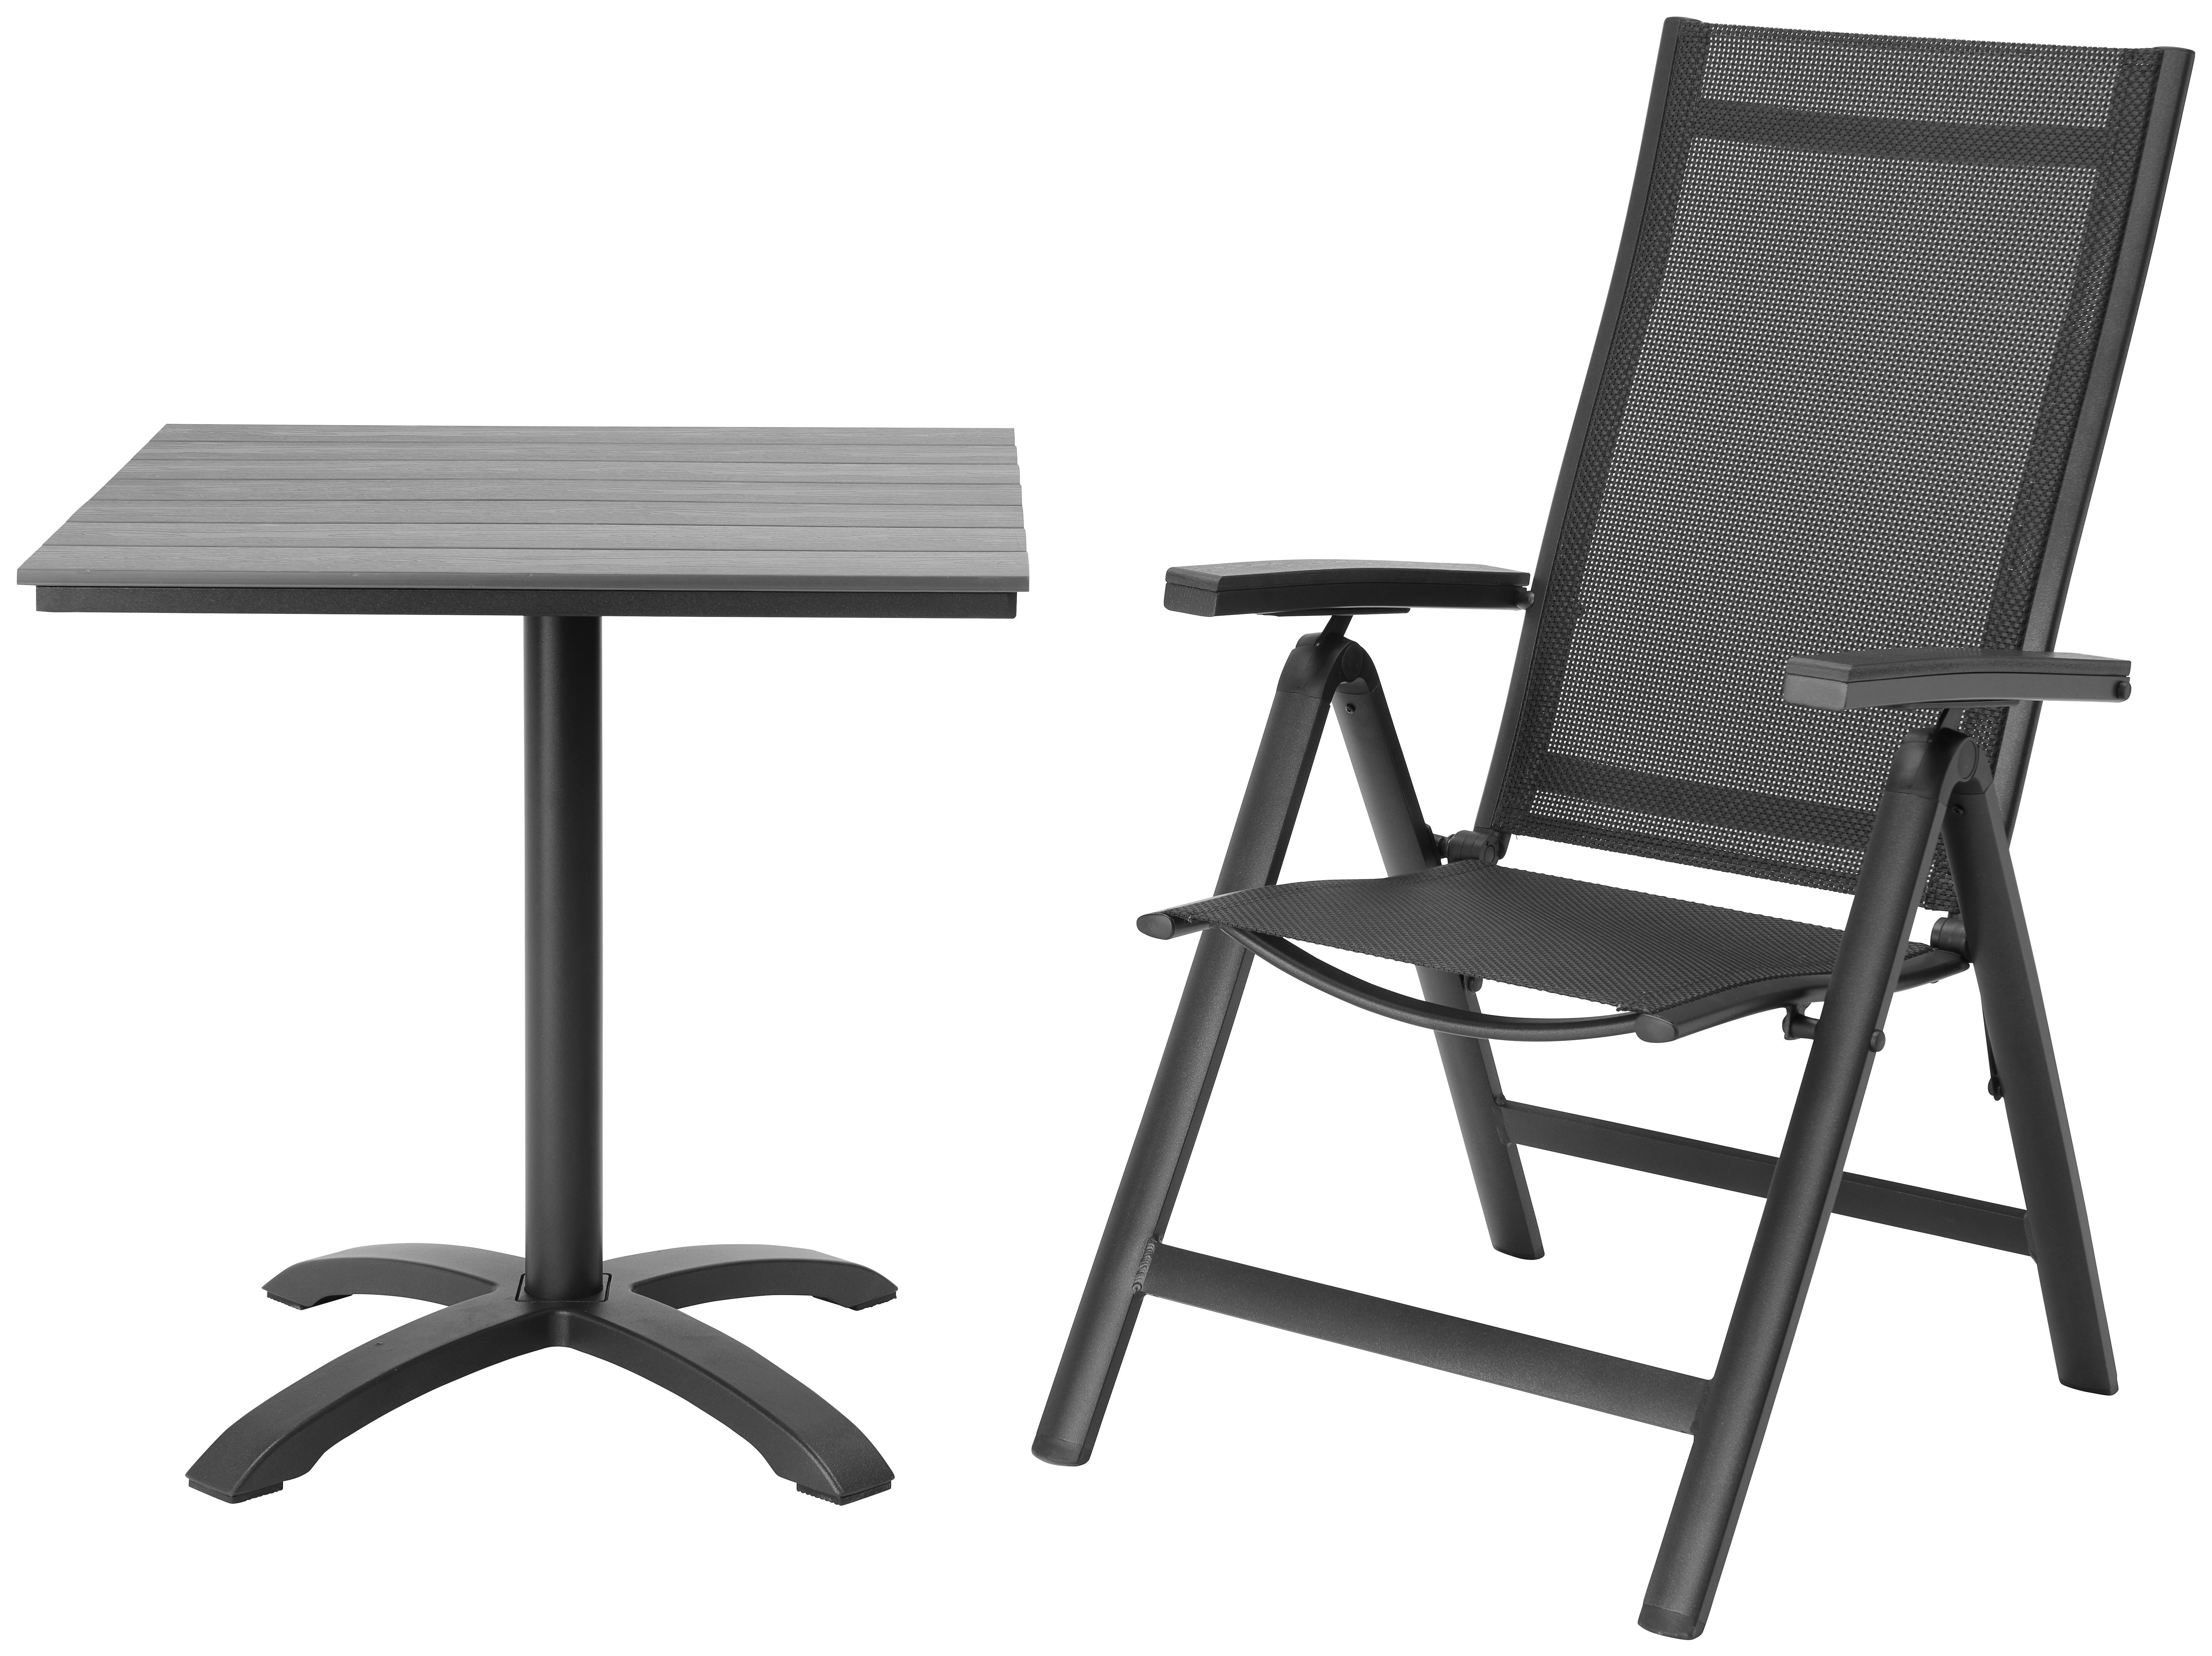 Fabian Polohovací Zahradní Židle - černá, Moderní, kov/plast (58/110/66cm) - Modern Living